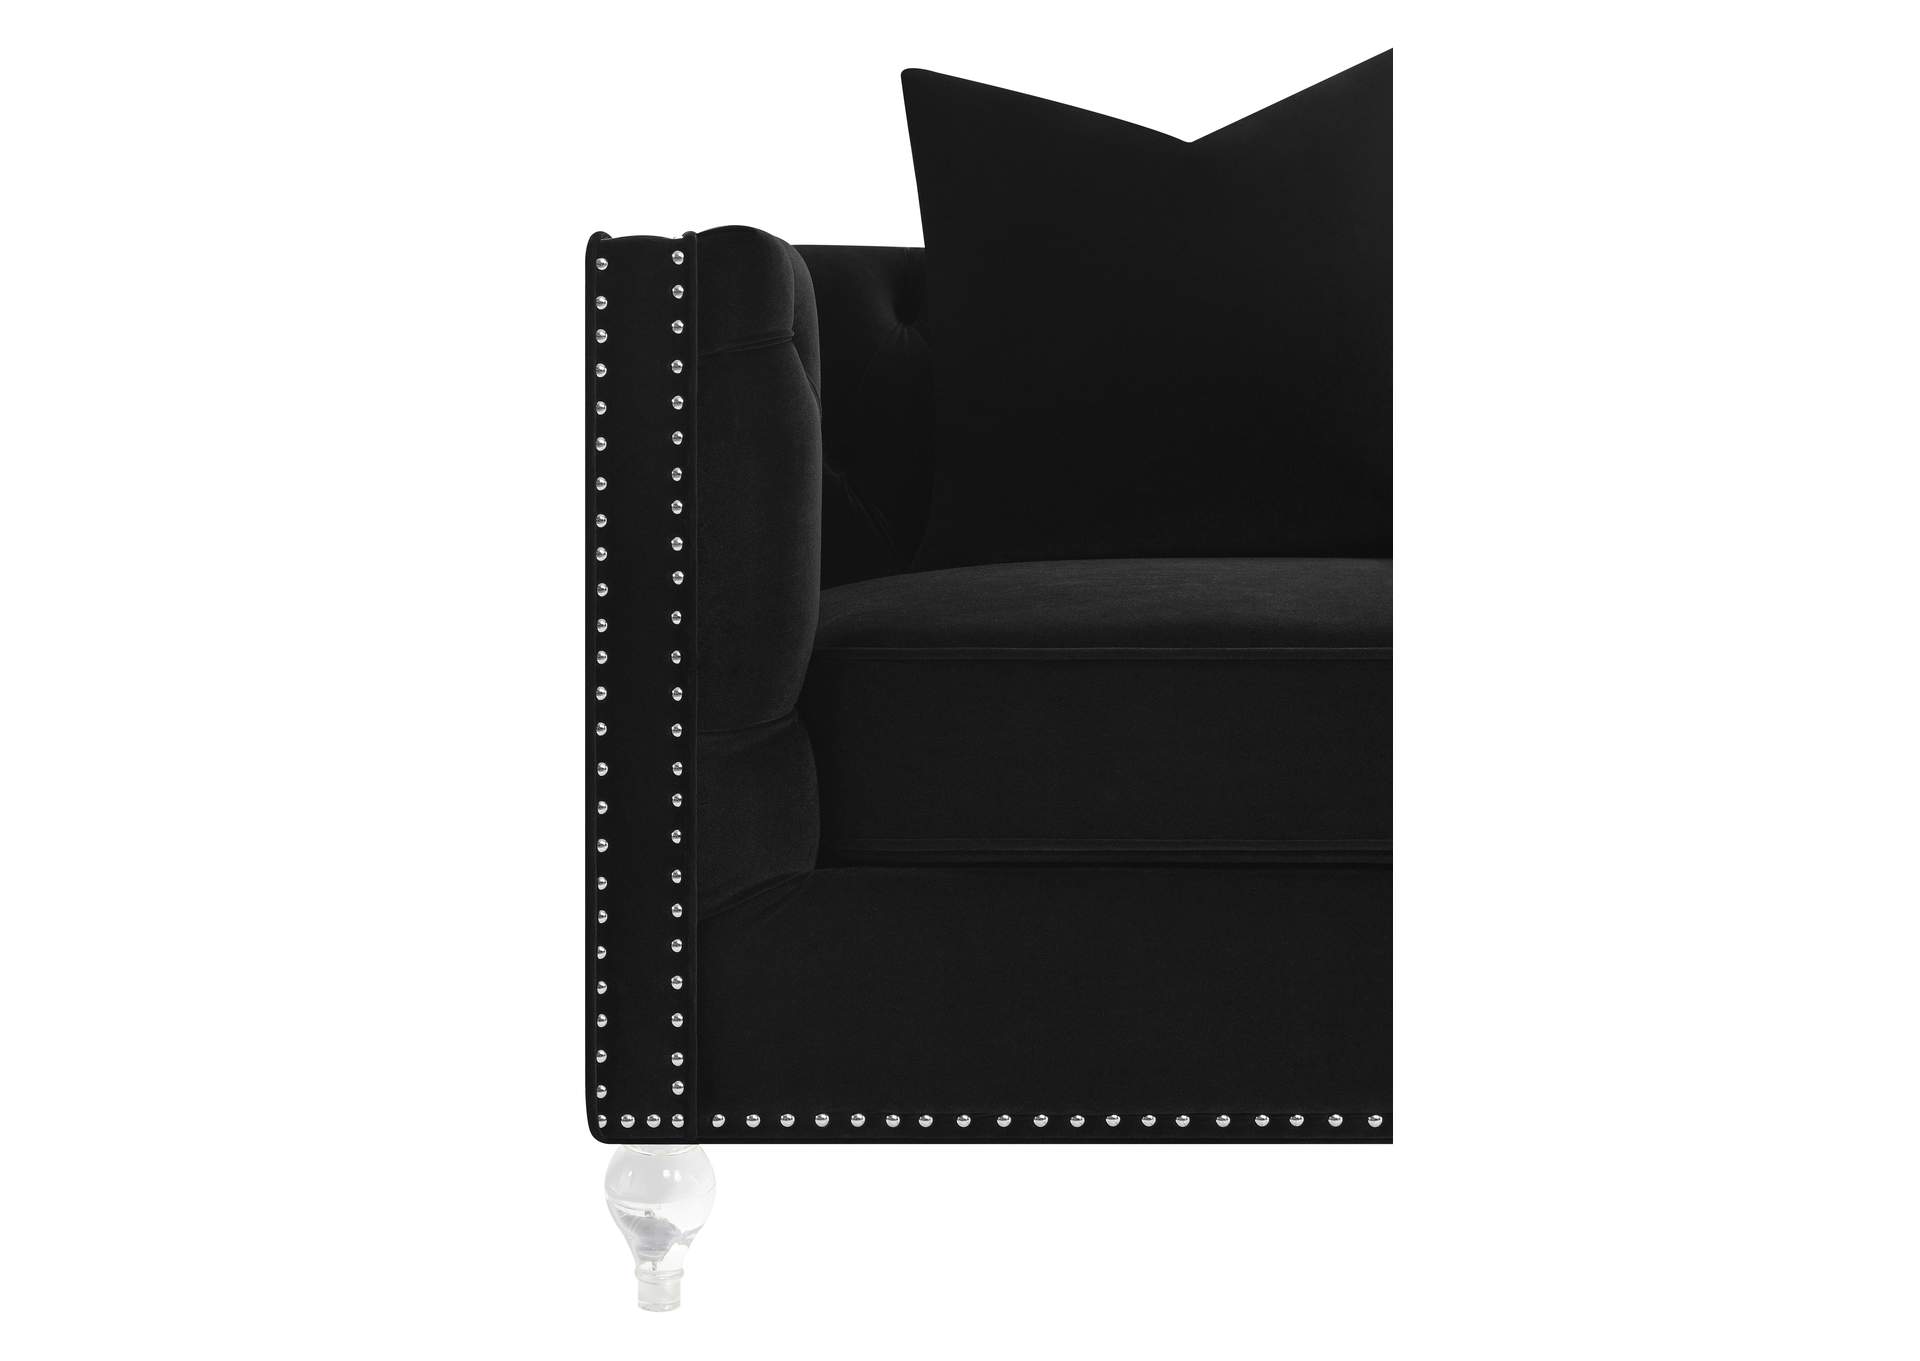 Delilah Upholstered Tufted Tuxedo Arm Loveseat Black,Coaster Furniture